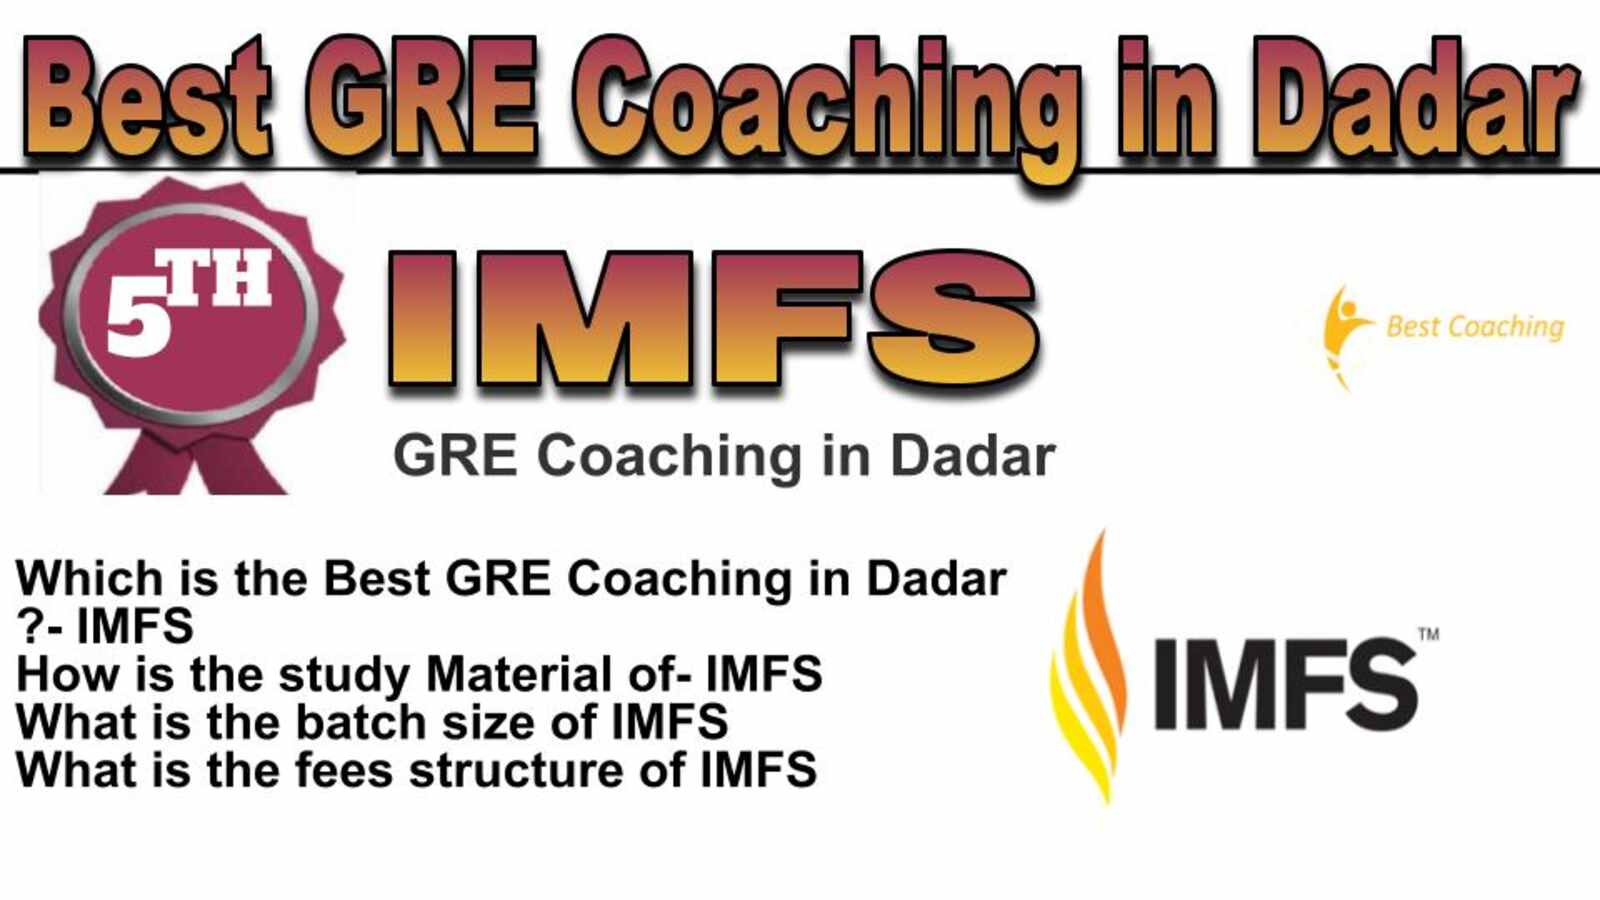 Rank 5 best GRE coaching in Dadar